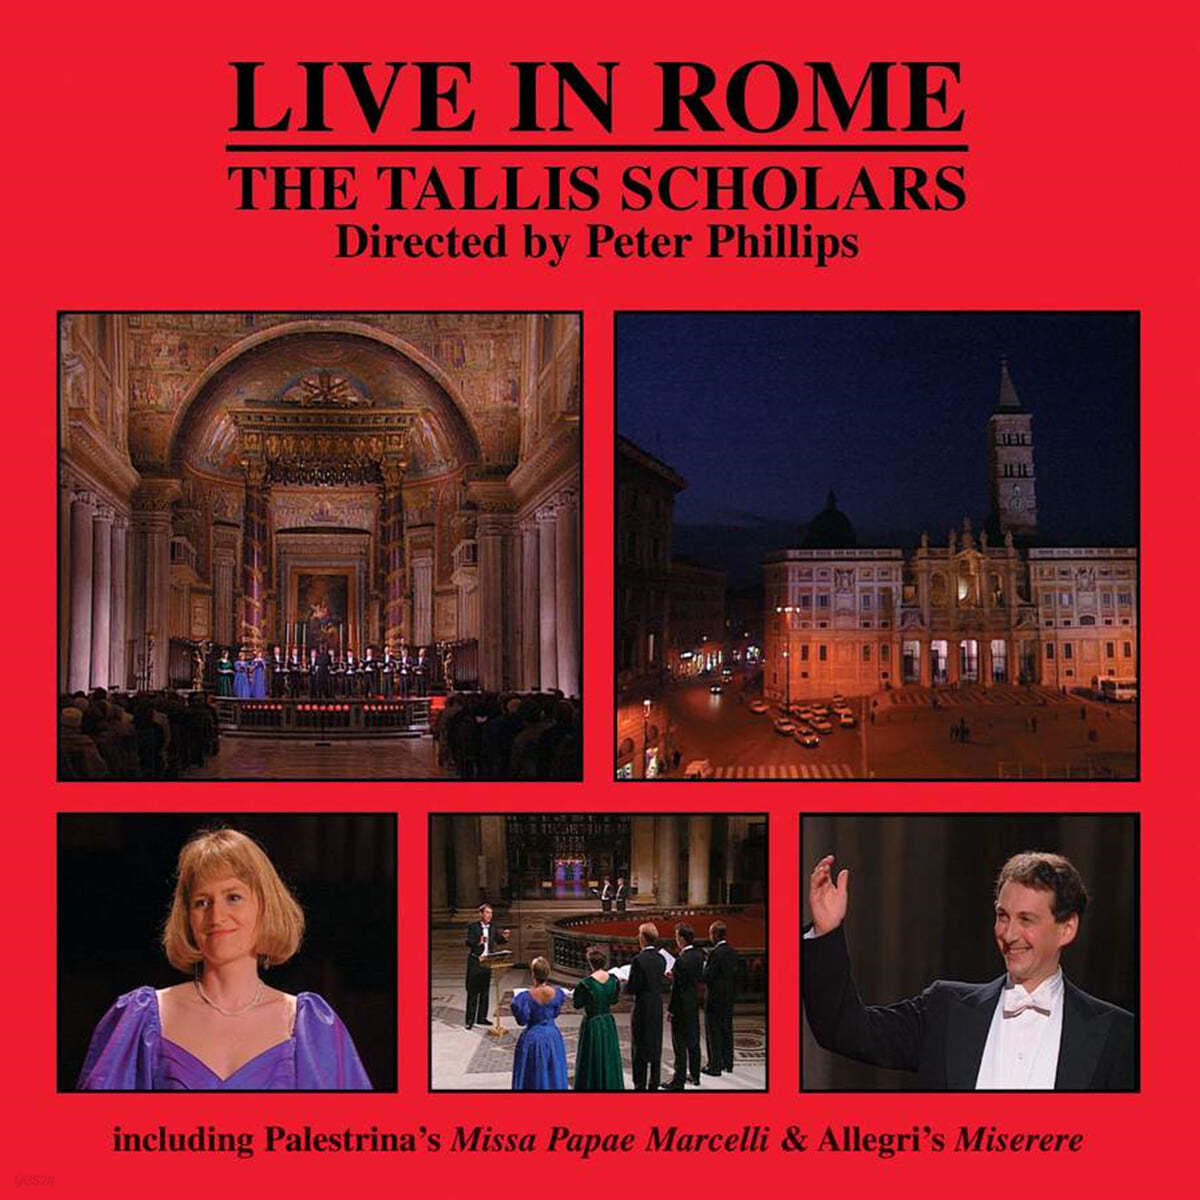 탈리스 스콜라스 합창단 로마 라이브 공연 (The Tallis Scholars - Live in Rome)